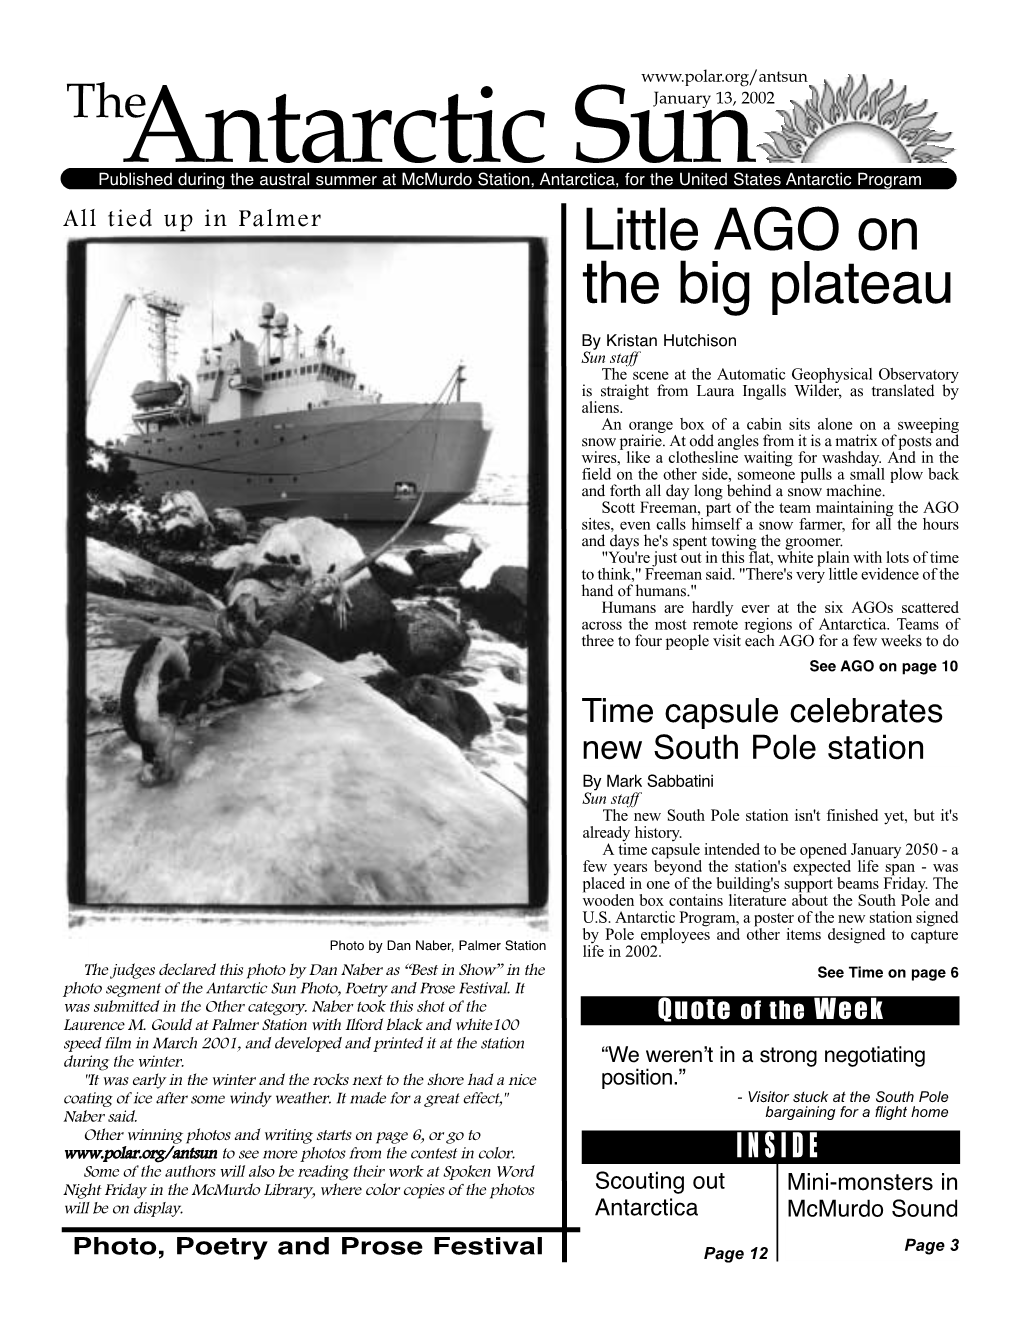 The Antarctic Sun, January 13, 2002